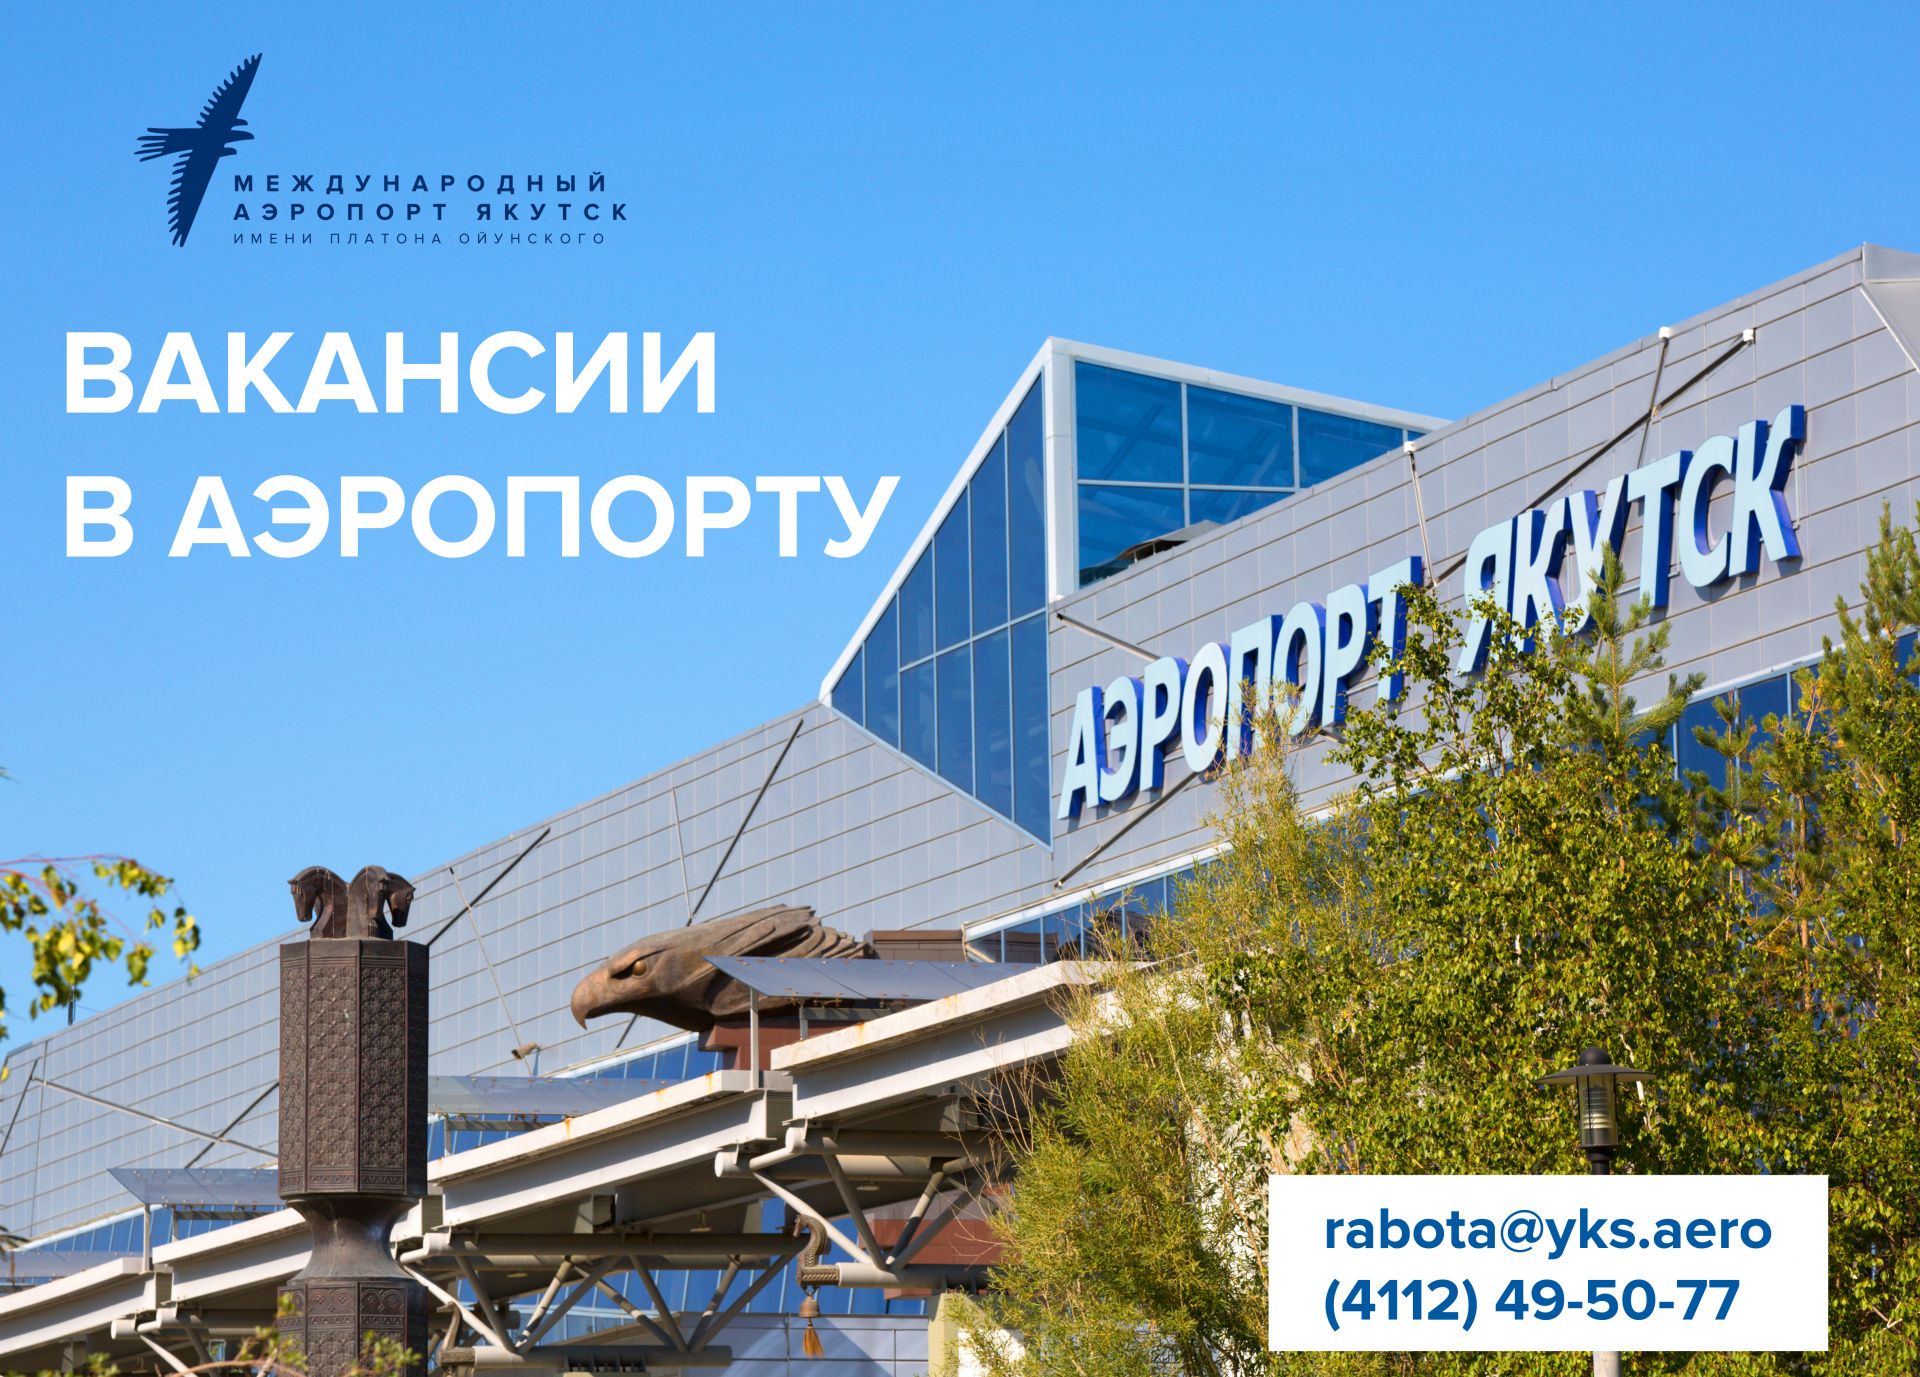 В акционерном обществе «Аэропорт Якутск» открыты вакансии